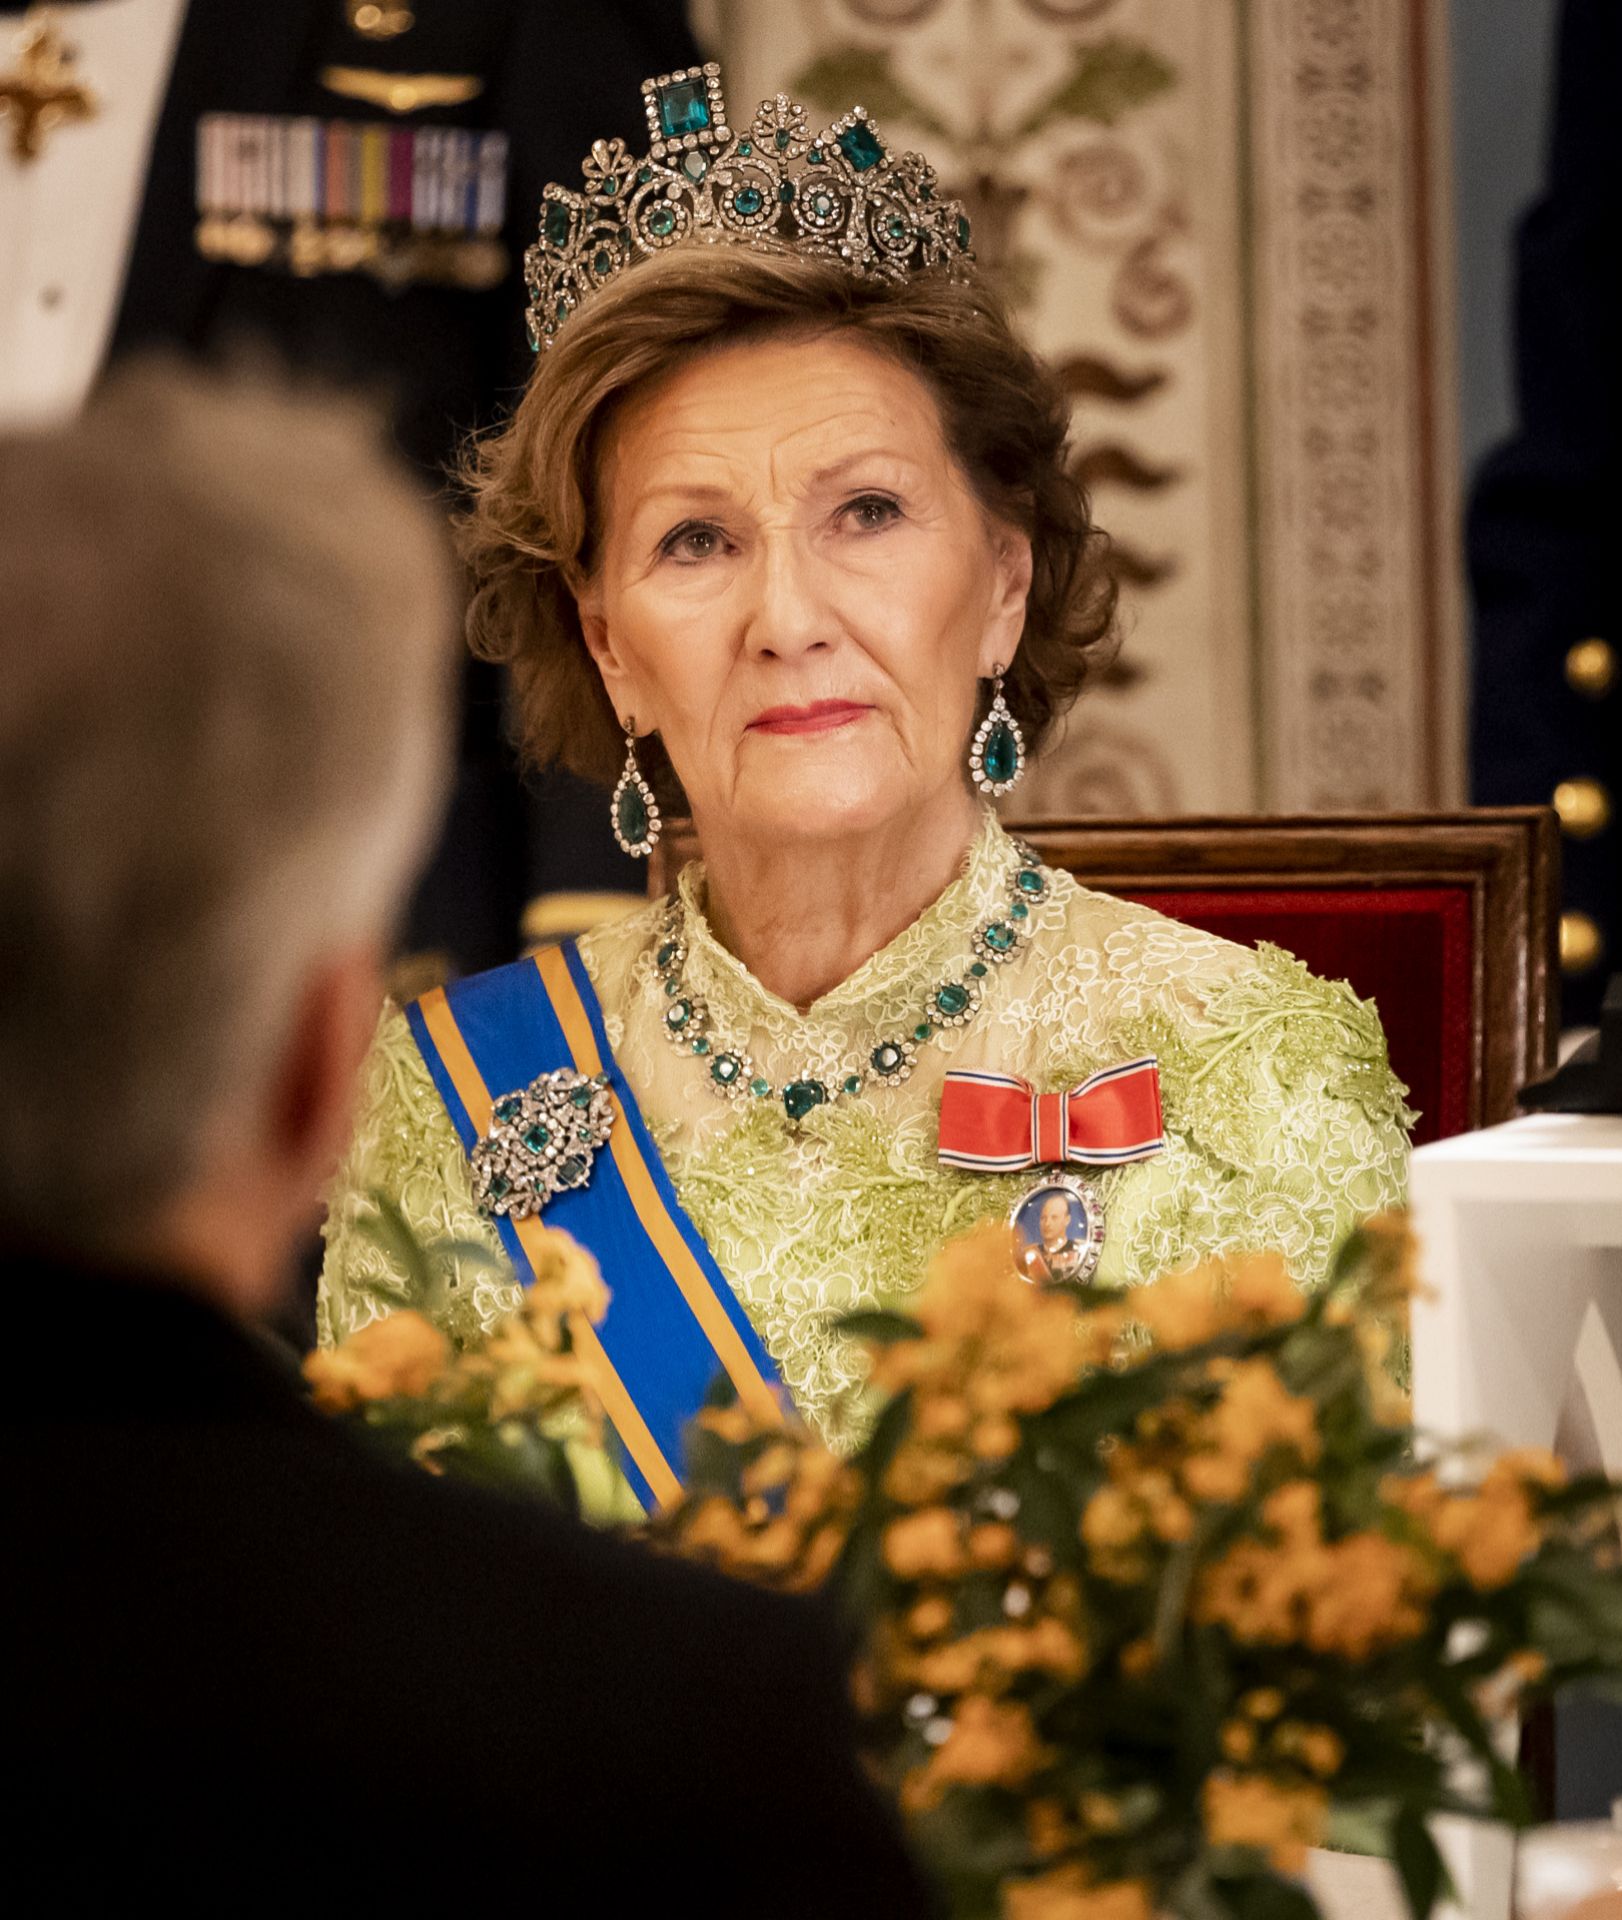 La reina sonja de noruega postal 